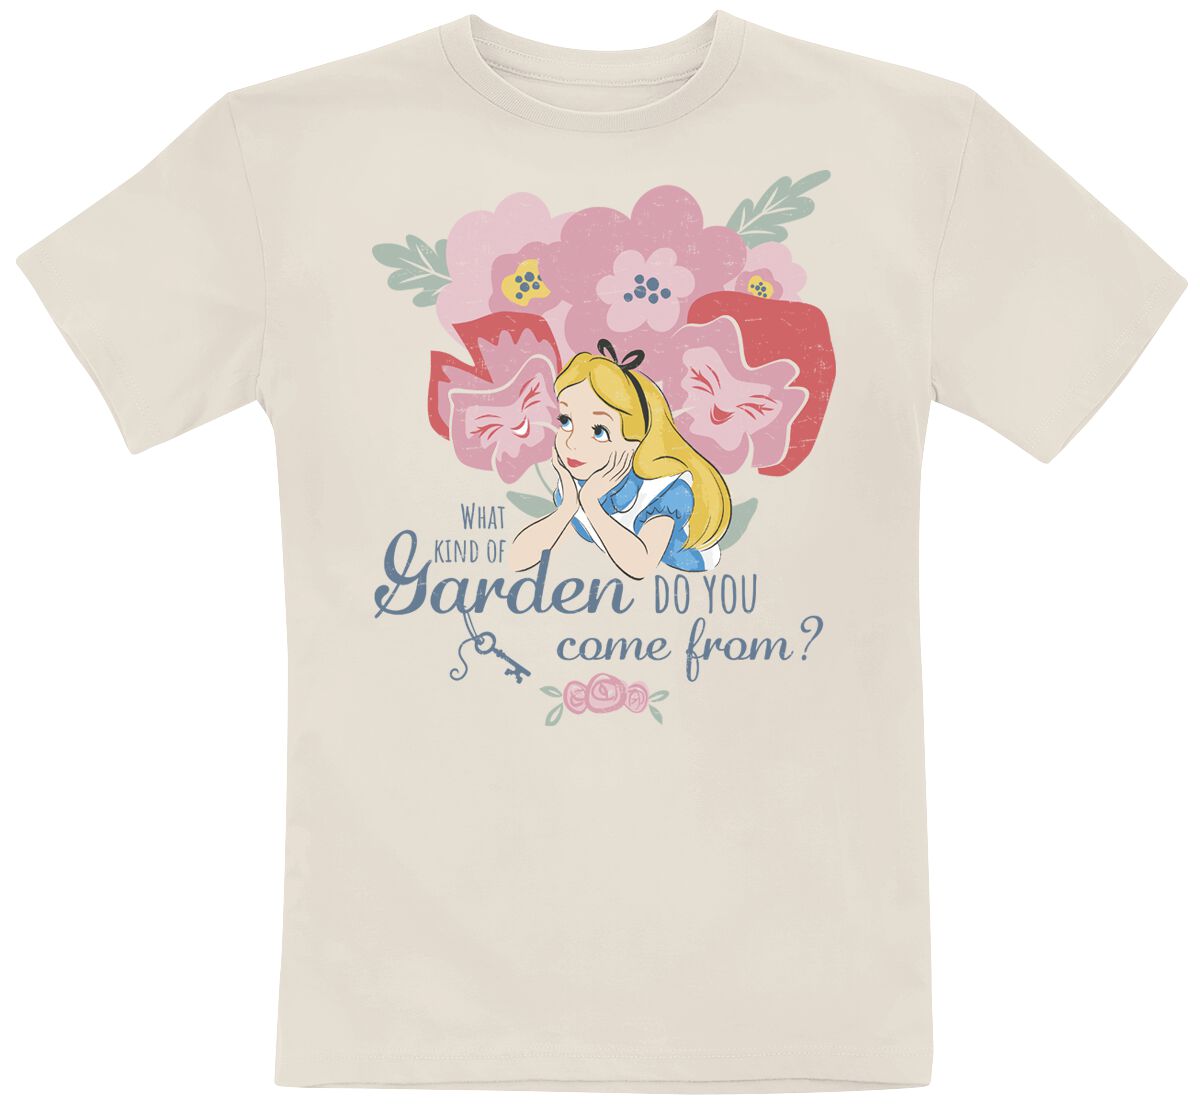 Alice im Wunderland - Disney T-Shirt - Kids - Garden - 164 - für Mädchen & Jungen - Größe 164 - natur  - EMP exklusives Merchandise!